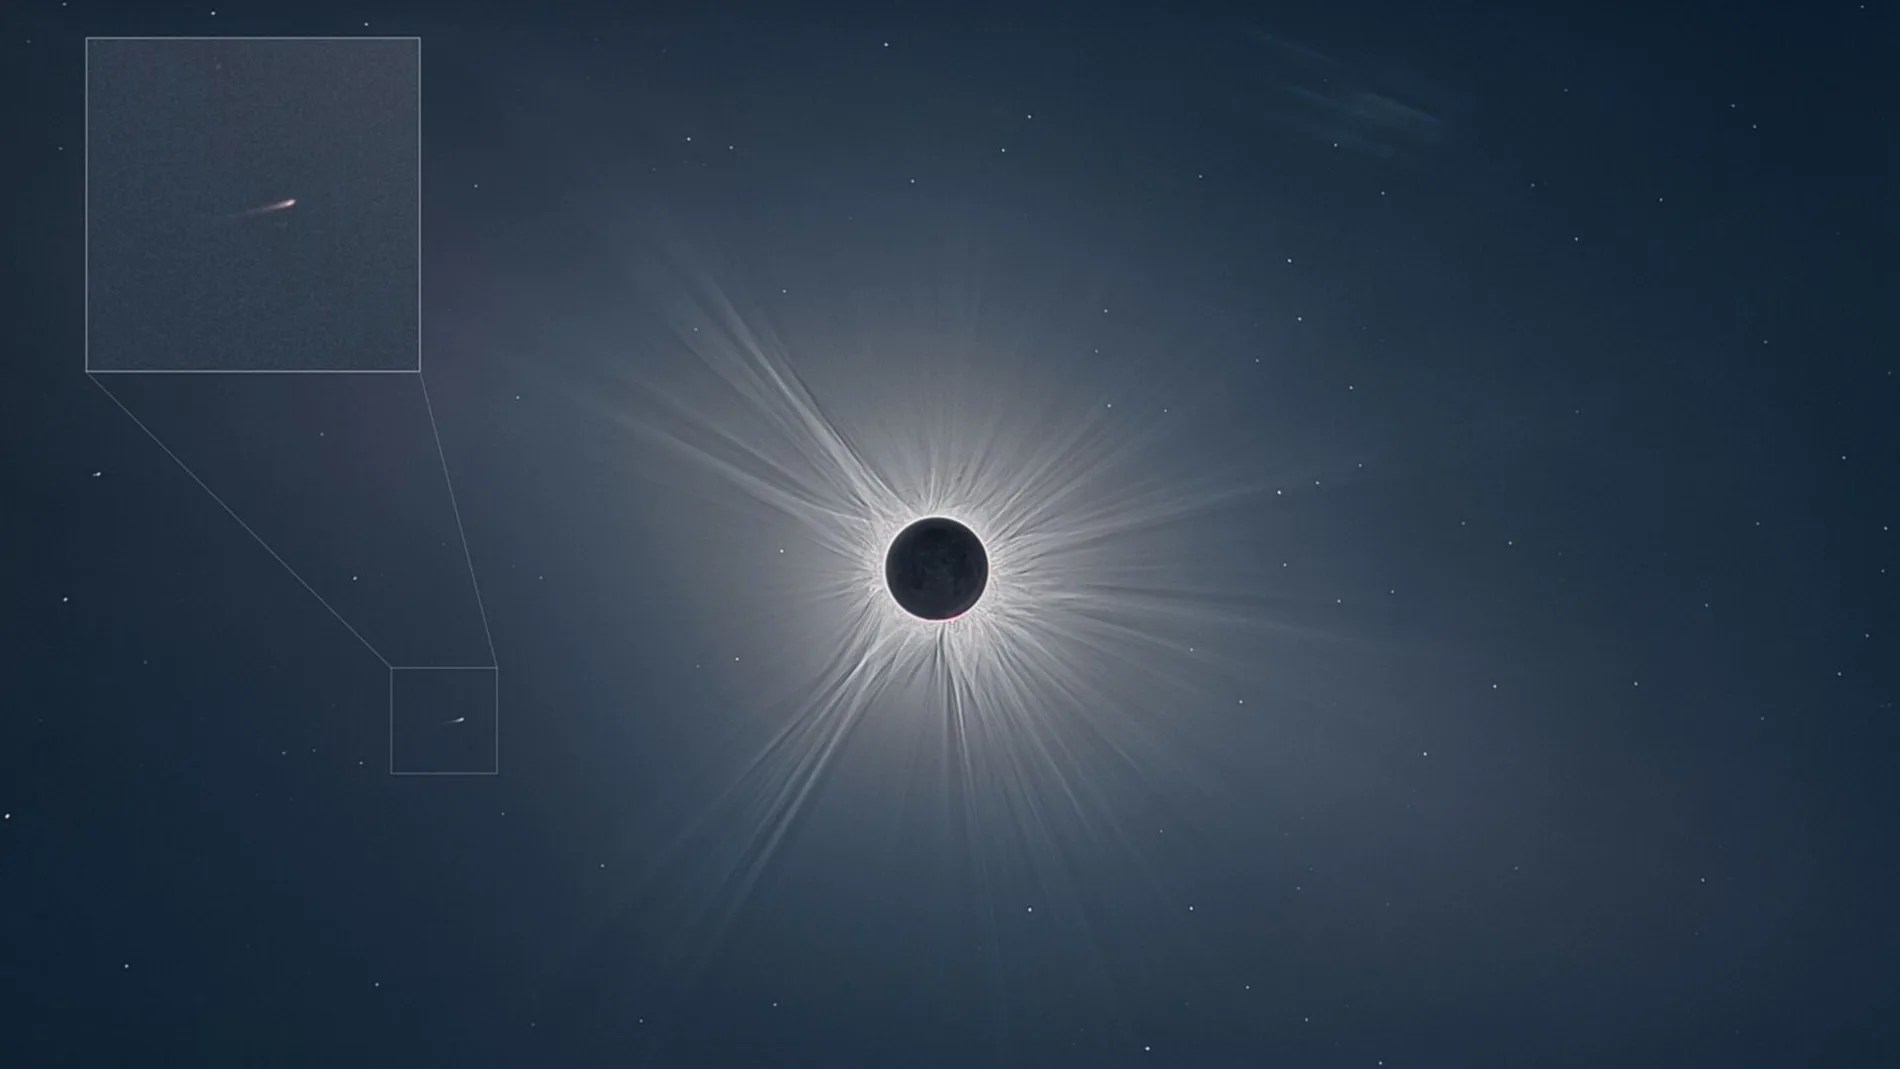 Esta es la foto del cometa que han descubierto gracias al eclipse